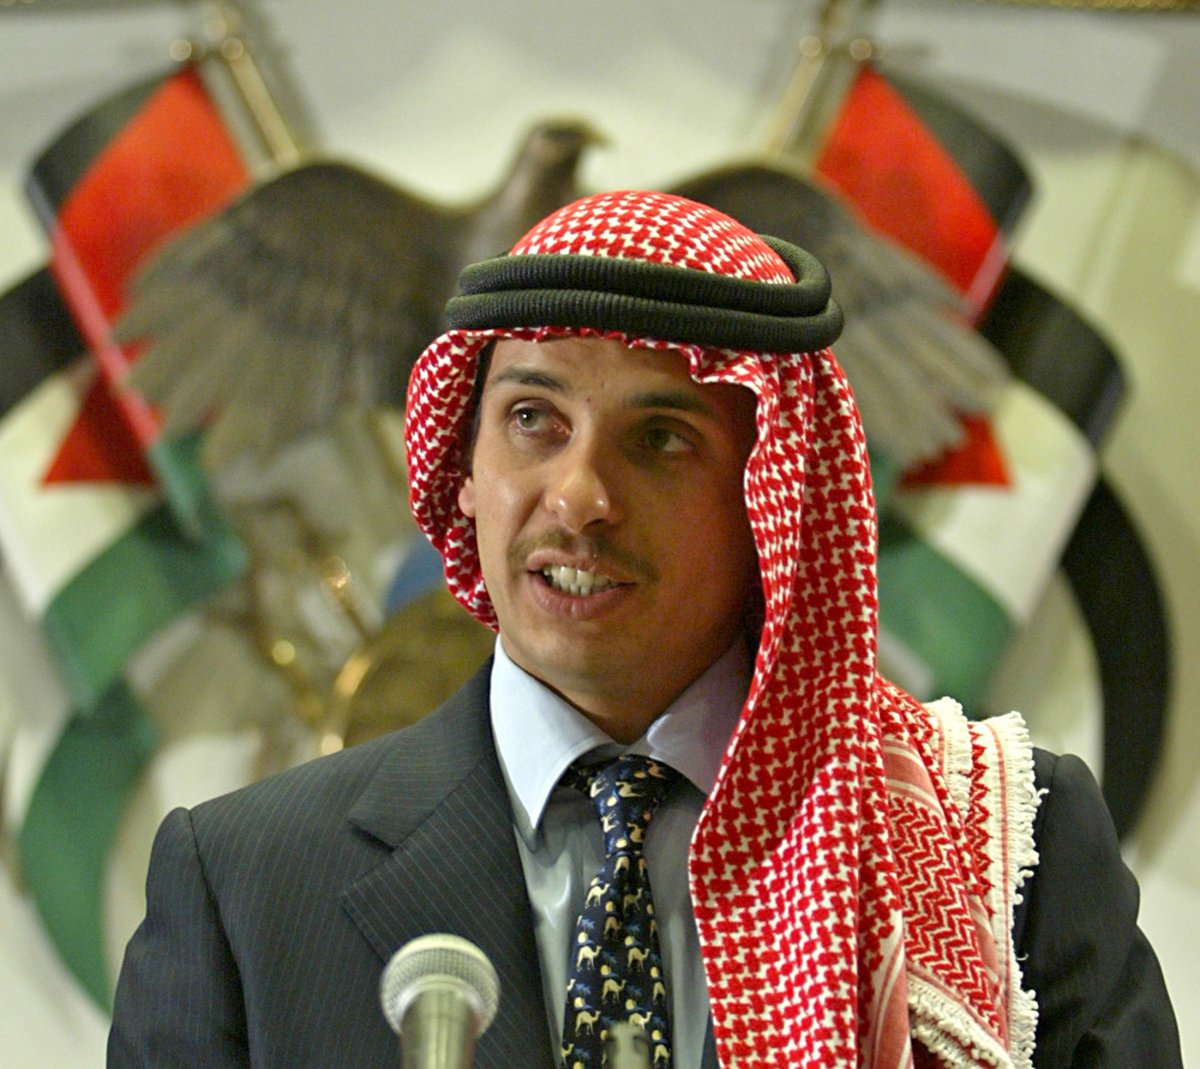 King Abdullah II of Jordan: Sedition suppressed #2